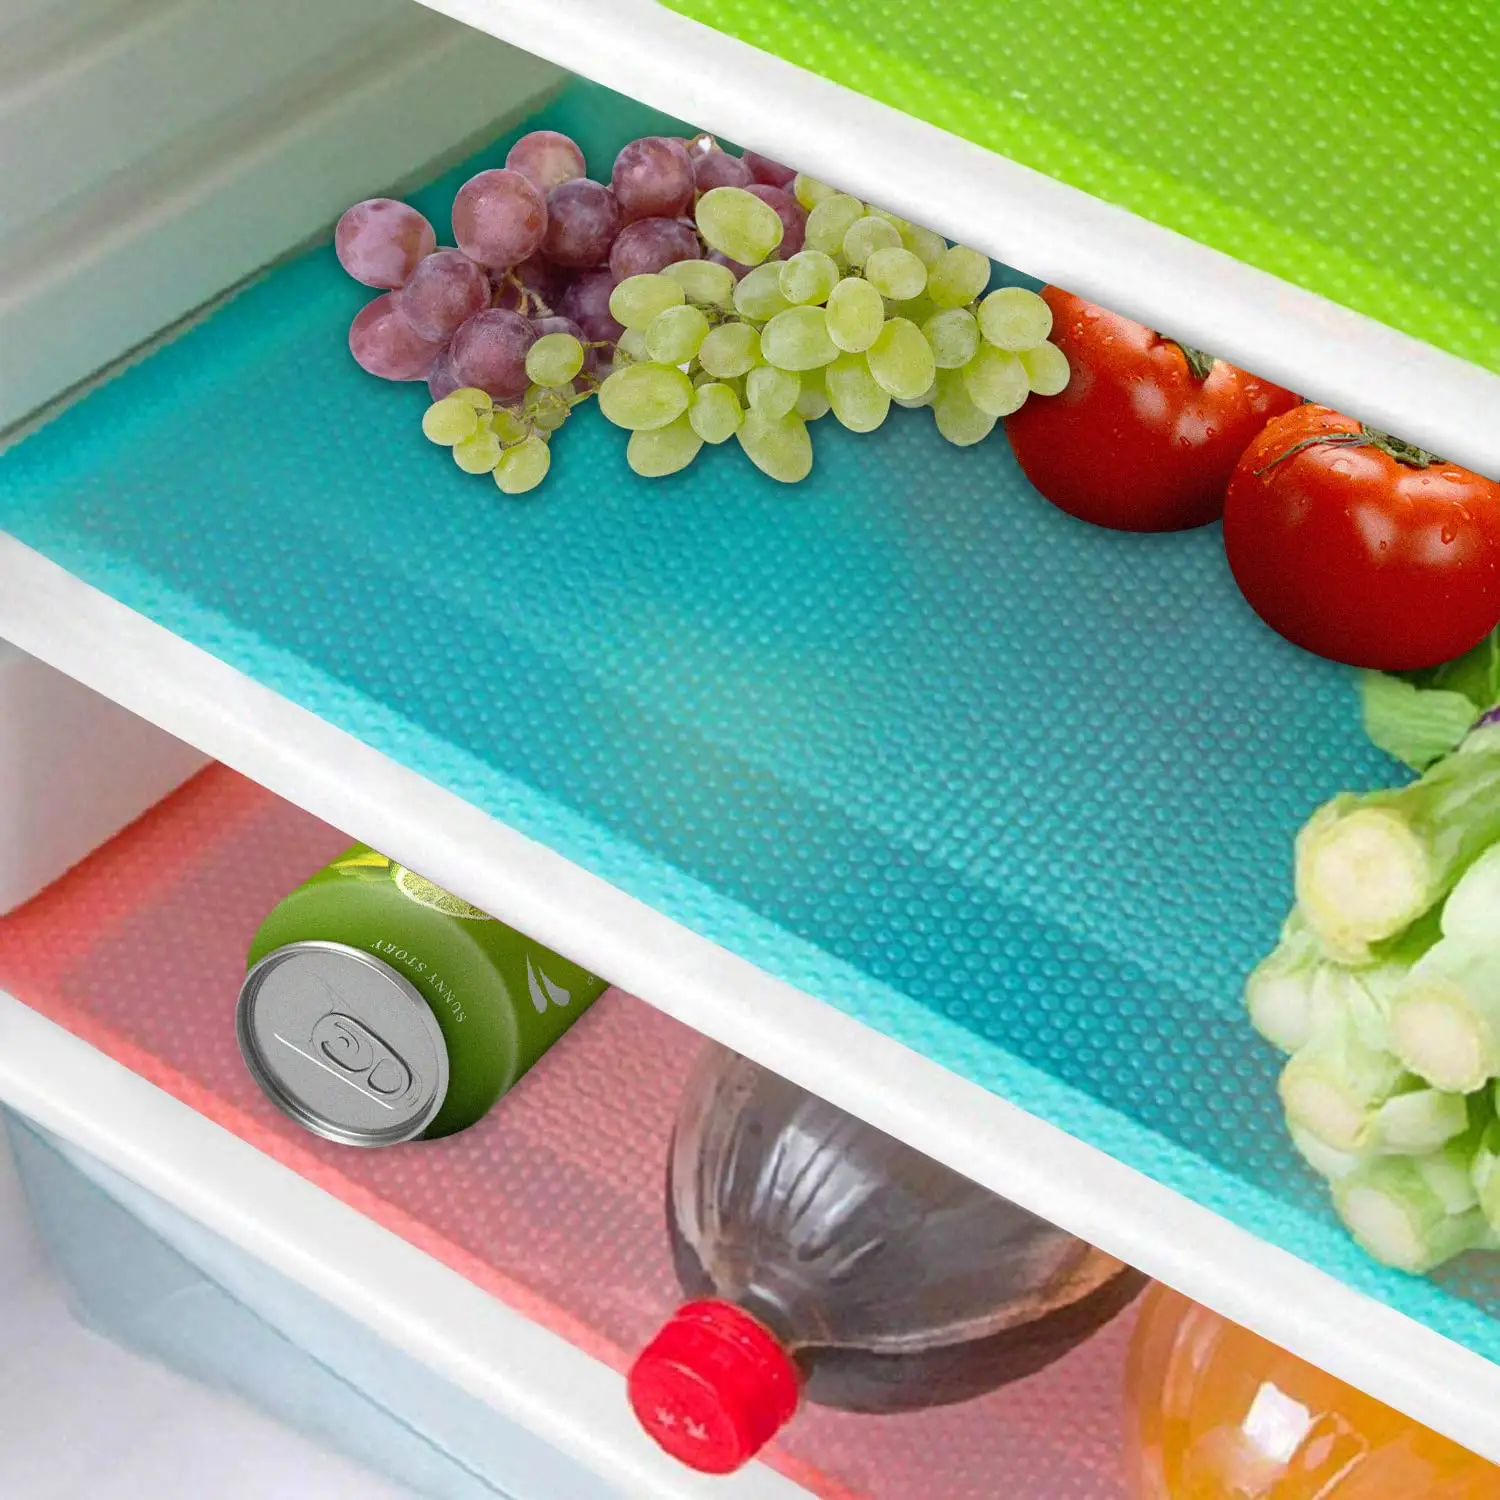 Tappetini per frigoriferi tappetini per frigoriferi lavabili fodera per frigoriferi impermeabili antiolio